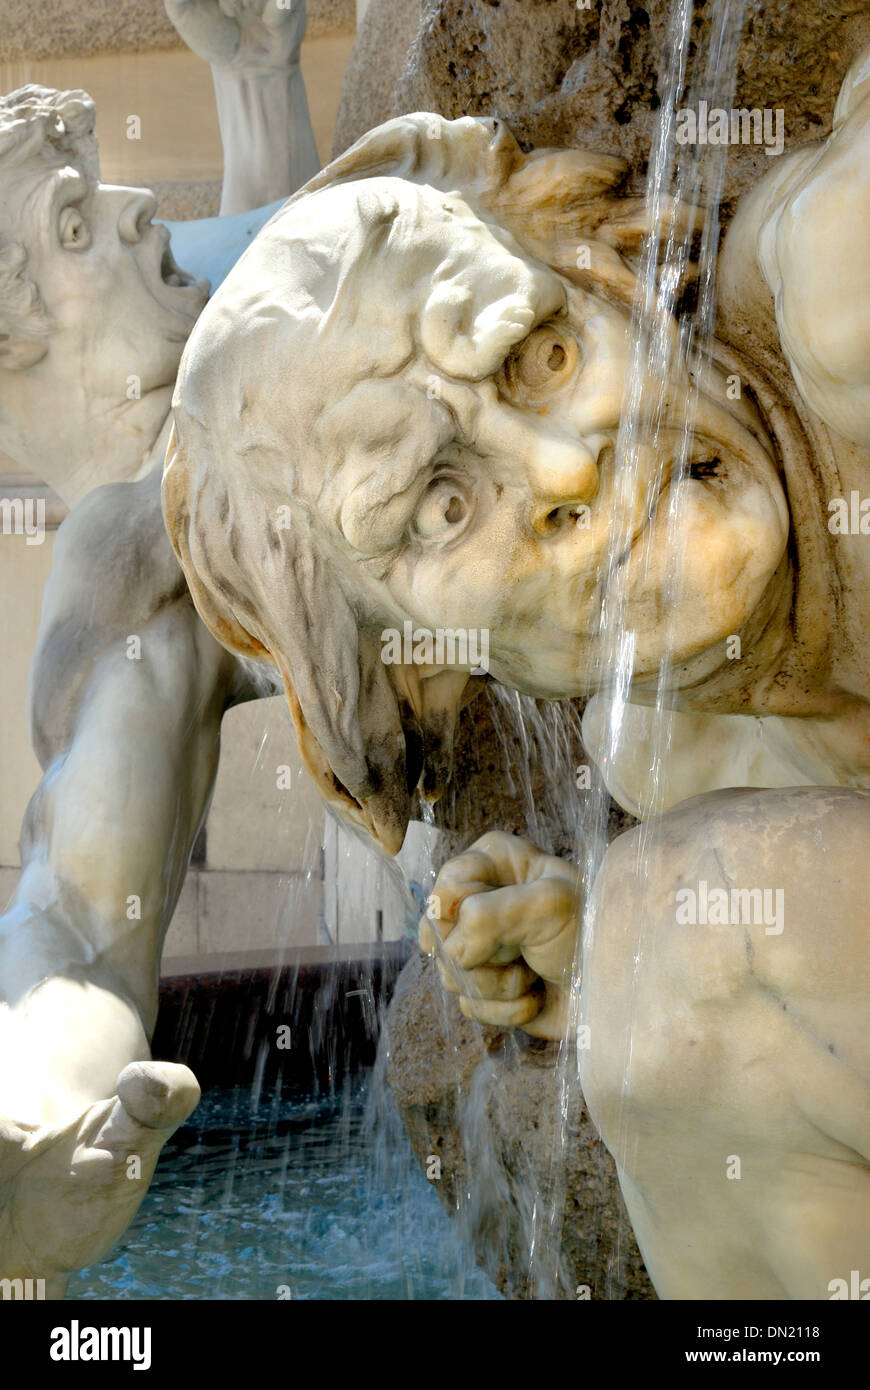 Vienne, Autriche. Michaelerplatz (carré) détail de la fontaine du Macht zur See (puissance en mer) (1893: Rudolf Weyr) Banque D'Images